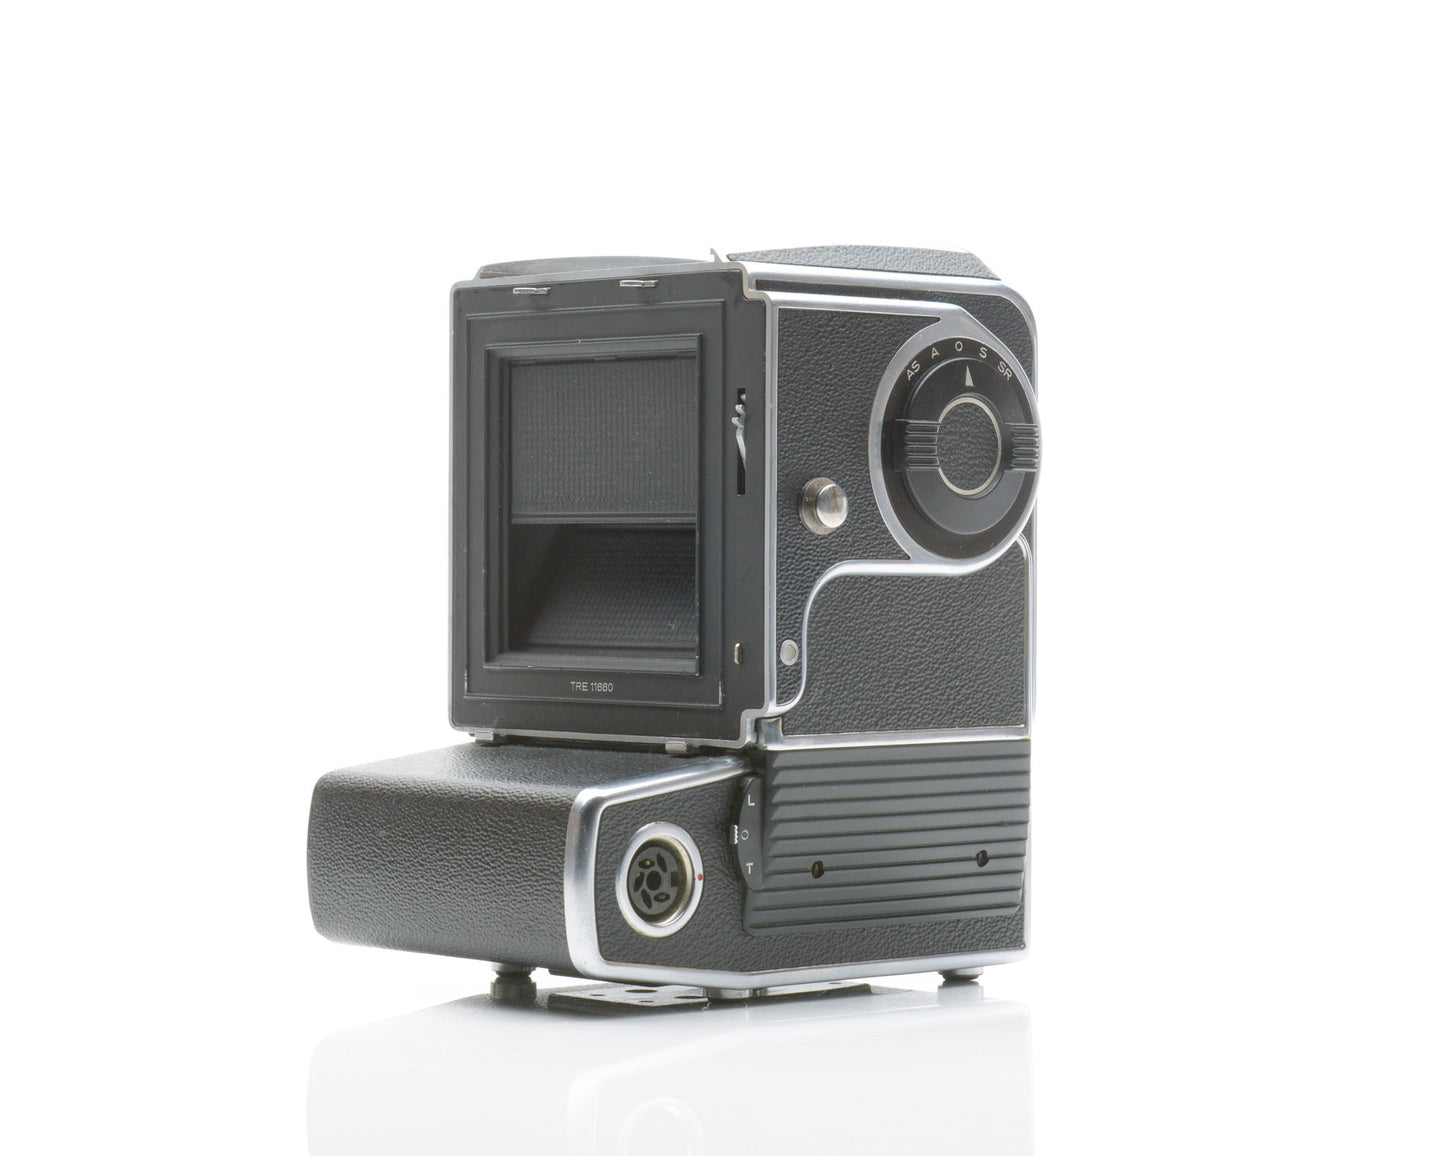 Hasselblad 500 EL/m 6x6 Medium Format Camera Body for Parts or Repair